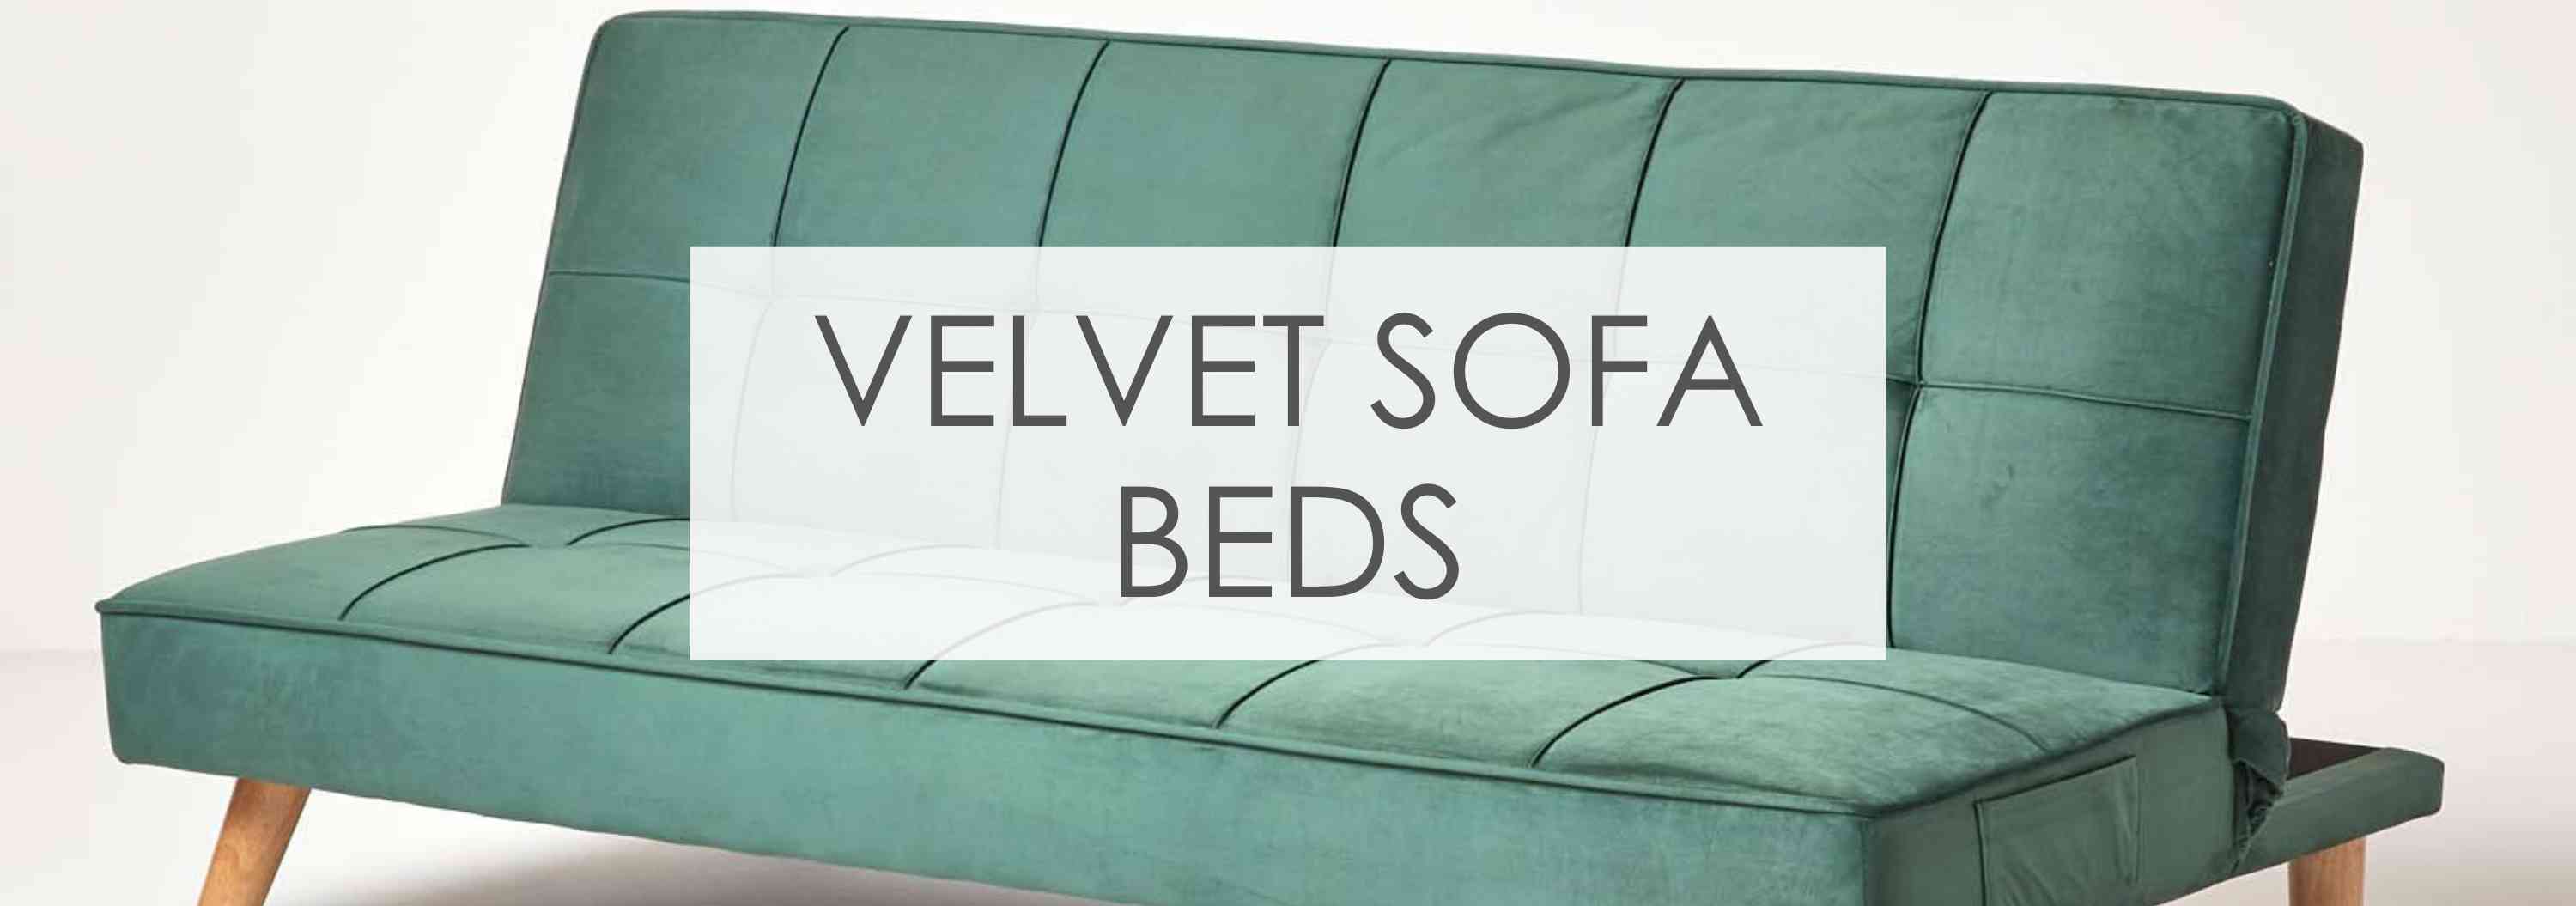 small velvet sofa bed uk